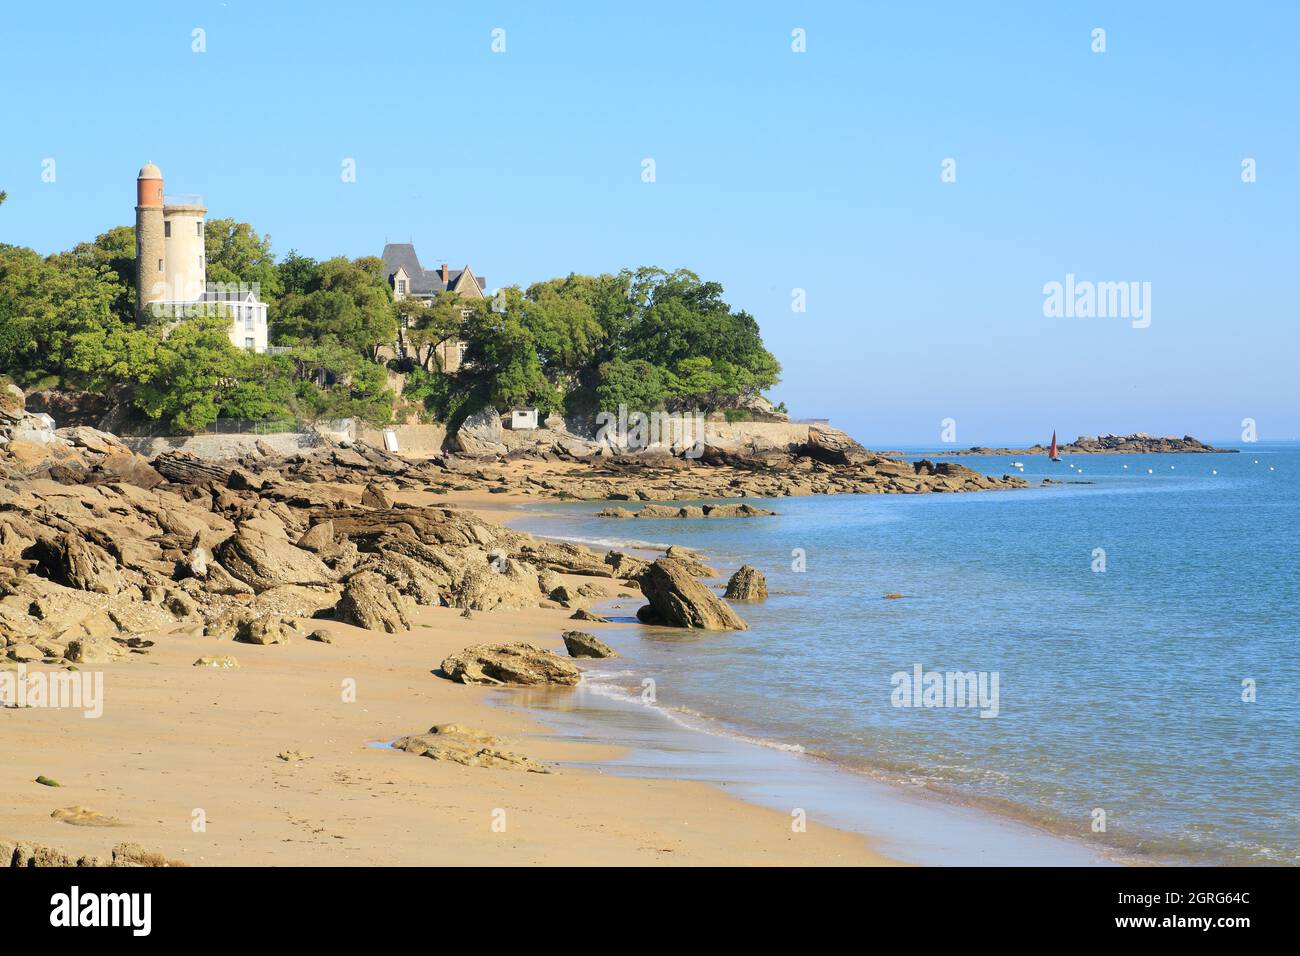 France, Vendee, Noirmoutier island, Noirmoutier en l'ile, Anse Rouge beach and the Plantier Tower Stock Photo